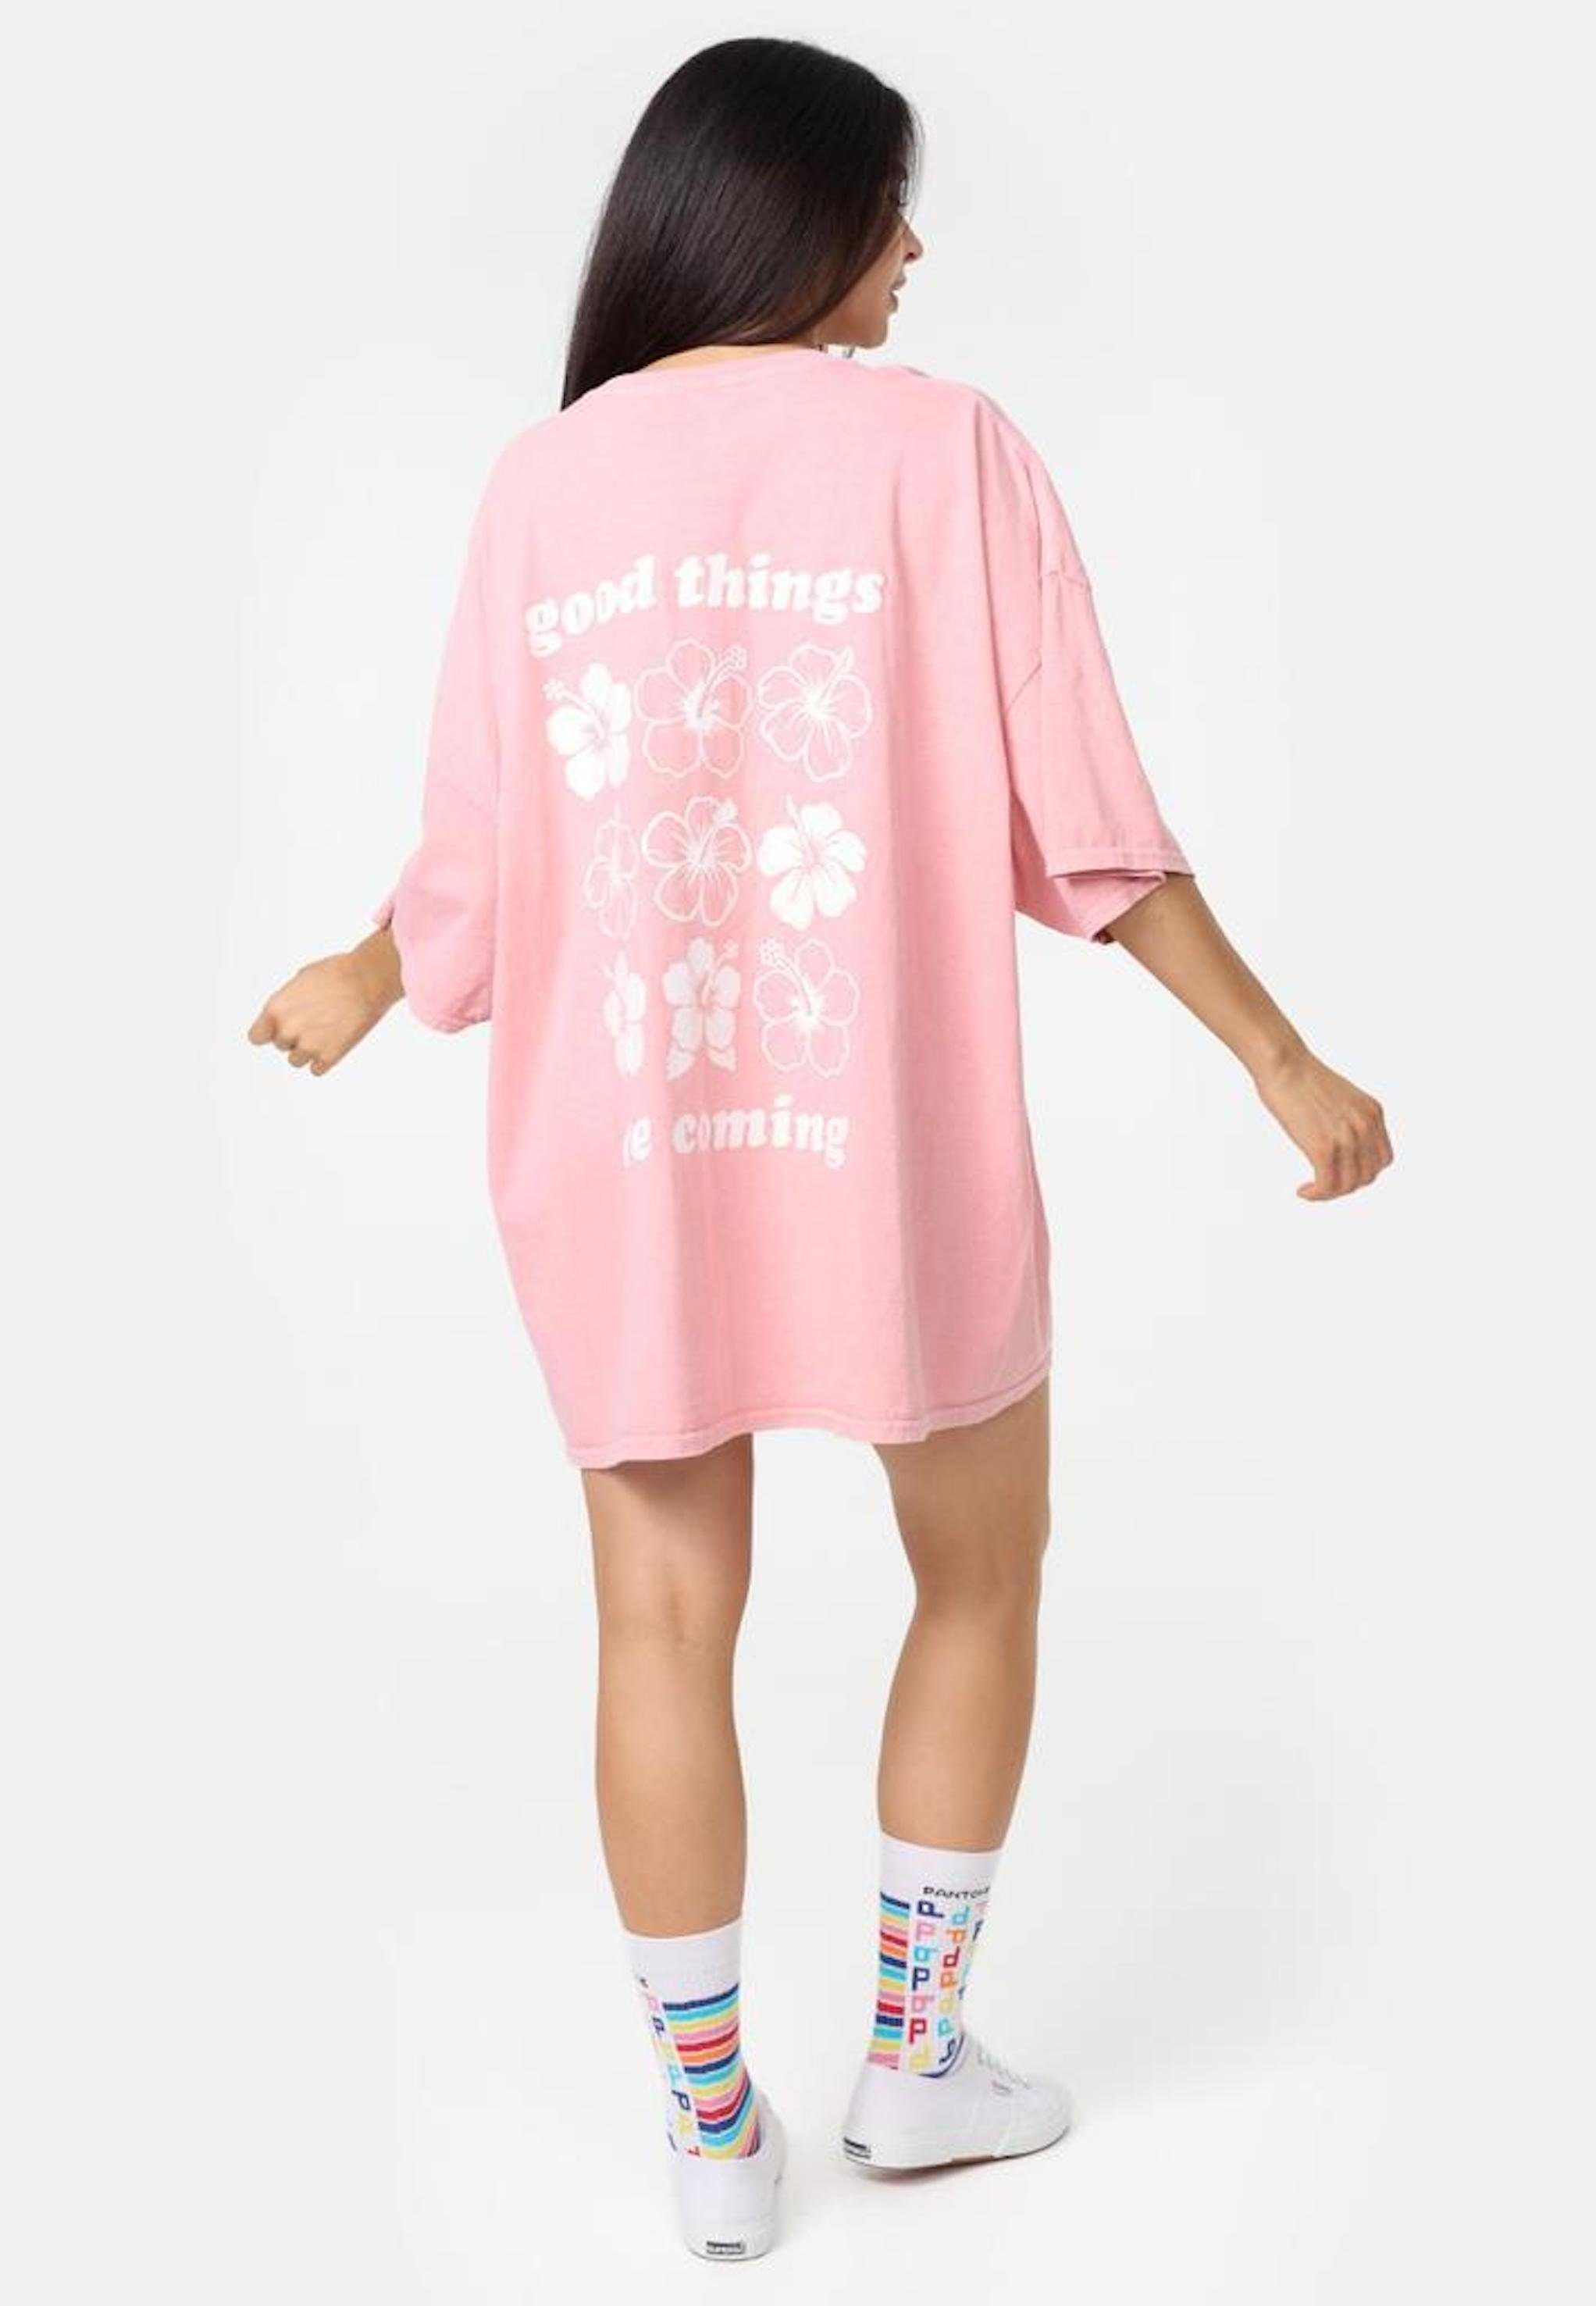 Sommer lang Worldclassca Worldclassca Tee T-Shirt Oversized Flower Oberteil Print T-Shirt Rosa